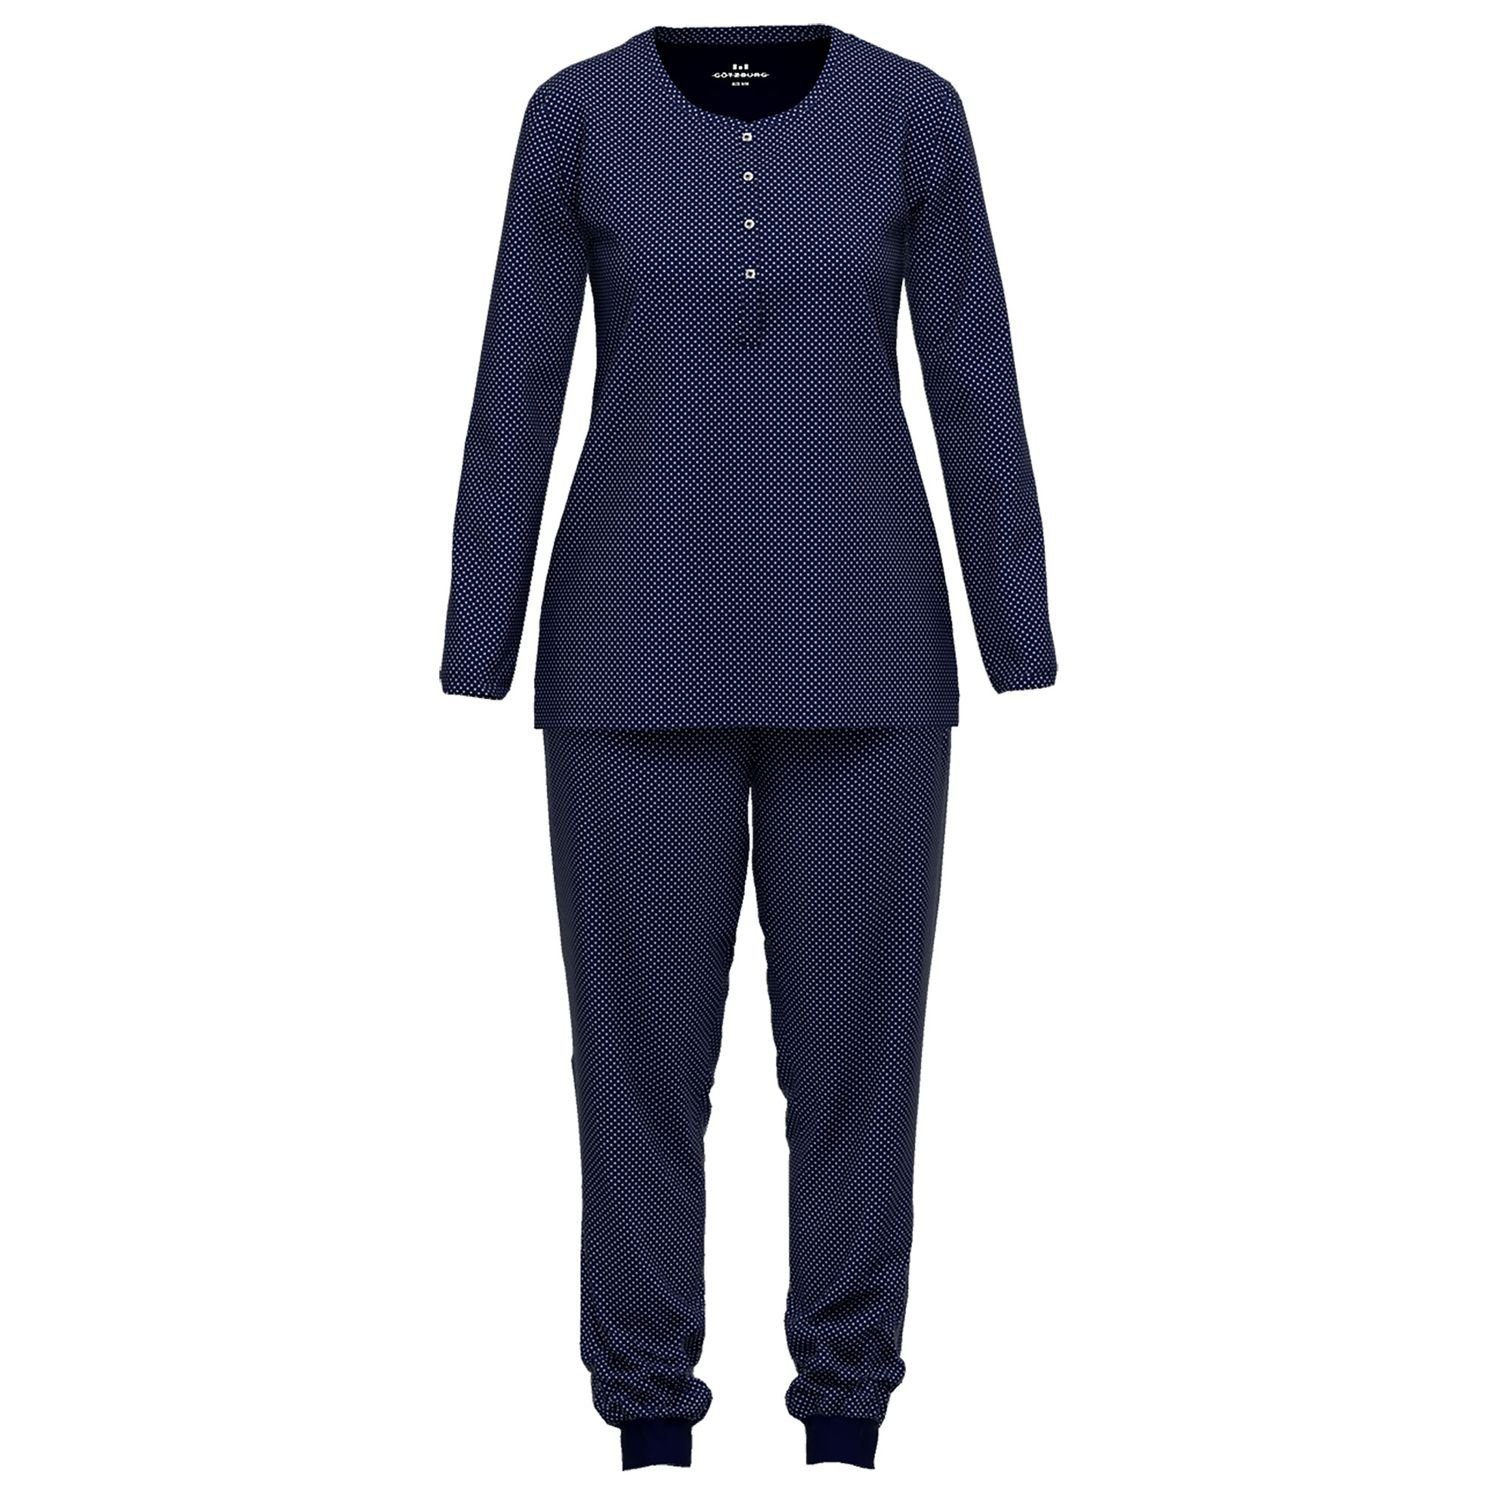 GÖTZBURG Schlafanzug mit Henley-Auschnitt, Knöpfe, langarm, weich, bequem, reine Baumolle navy / weiß gepunktet | Pyjama-Sets